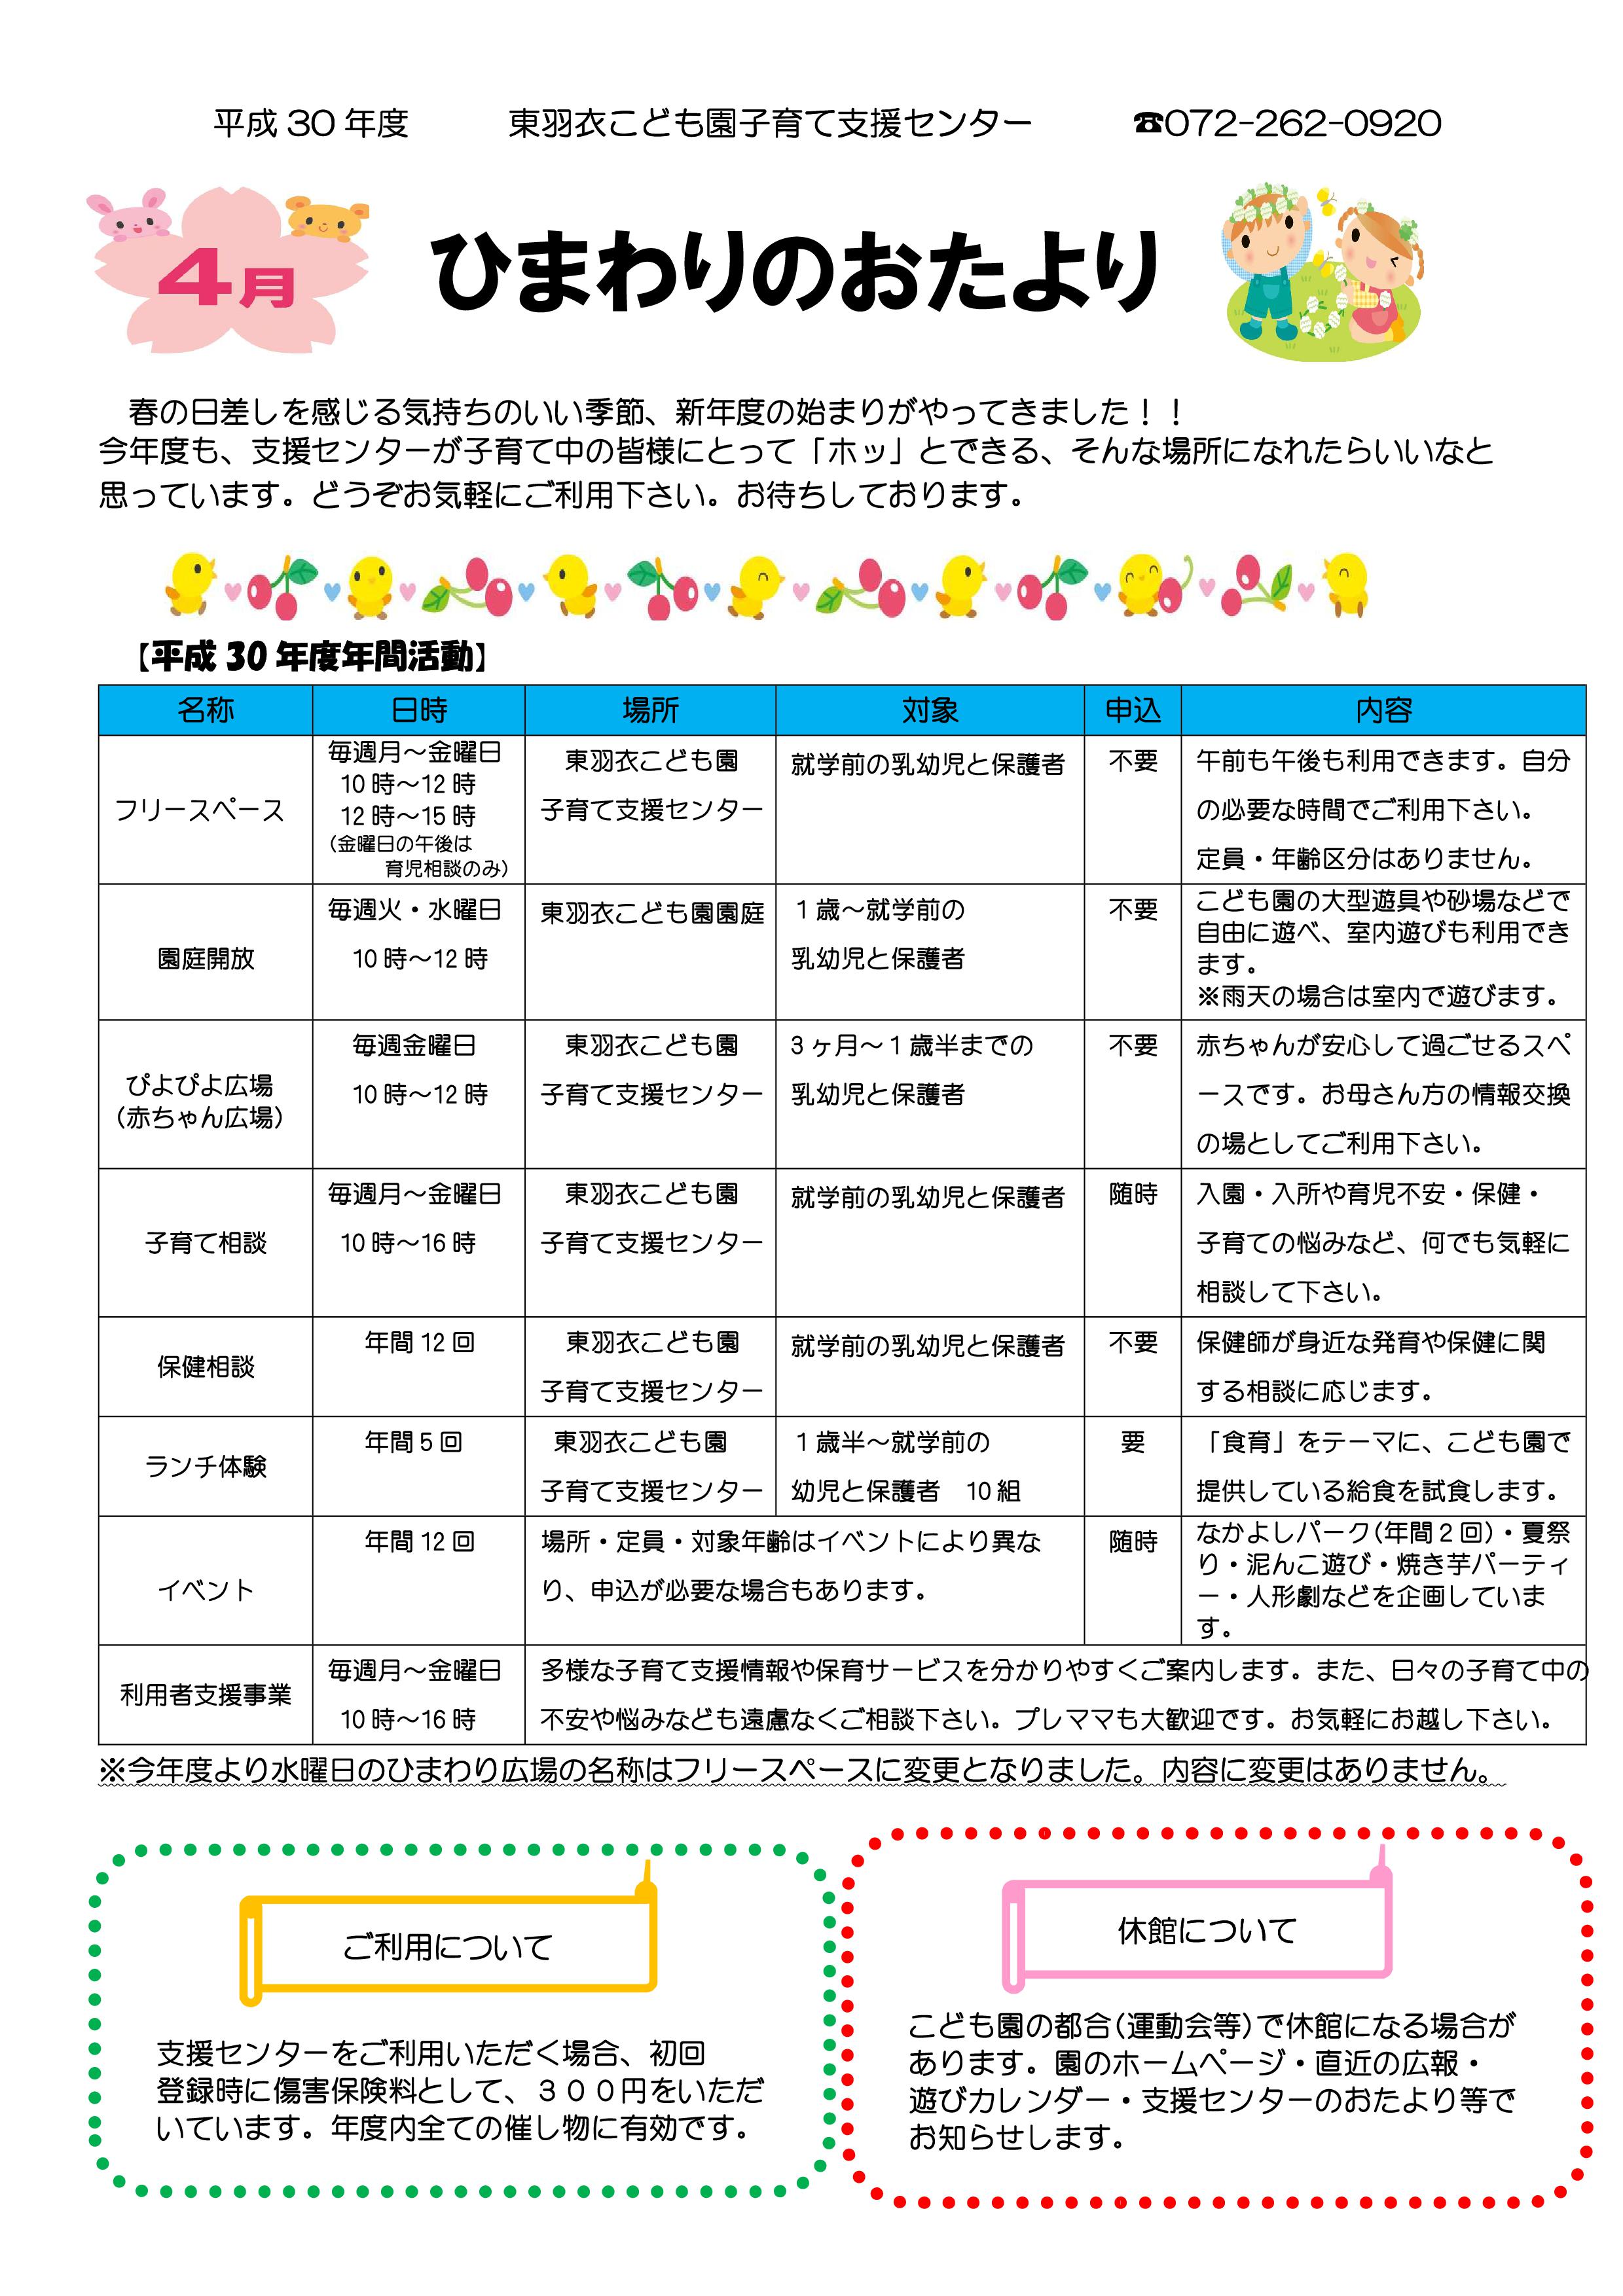 http://higashihagoromo-kodomoen.ed.jp/news/images/PDF%20%E3%83%95%E3%82%A1%E3%82%A4%E3%83%AB-001.jpg